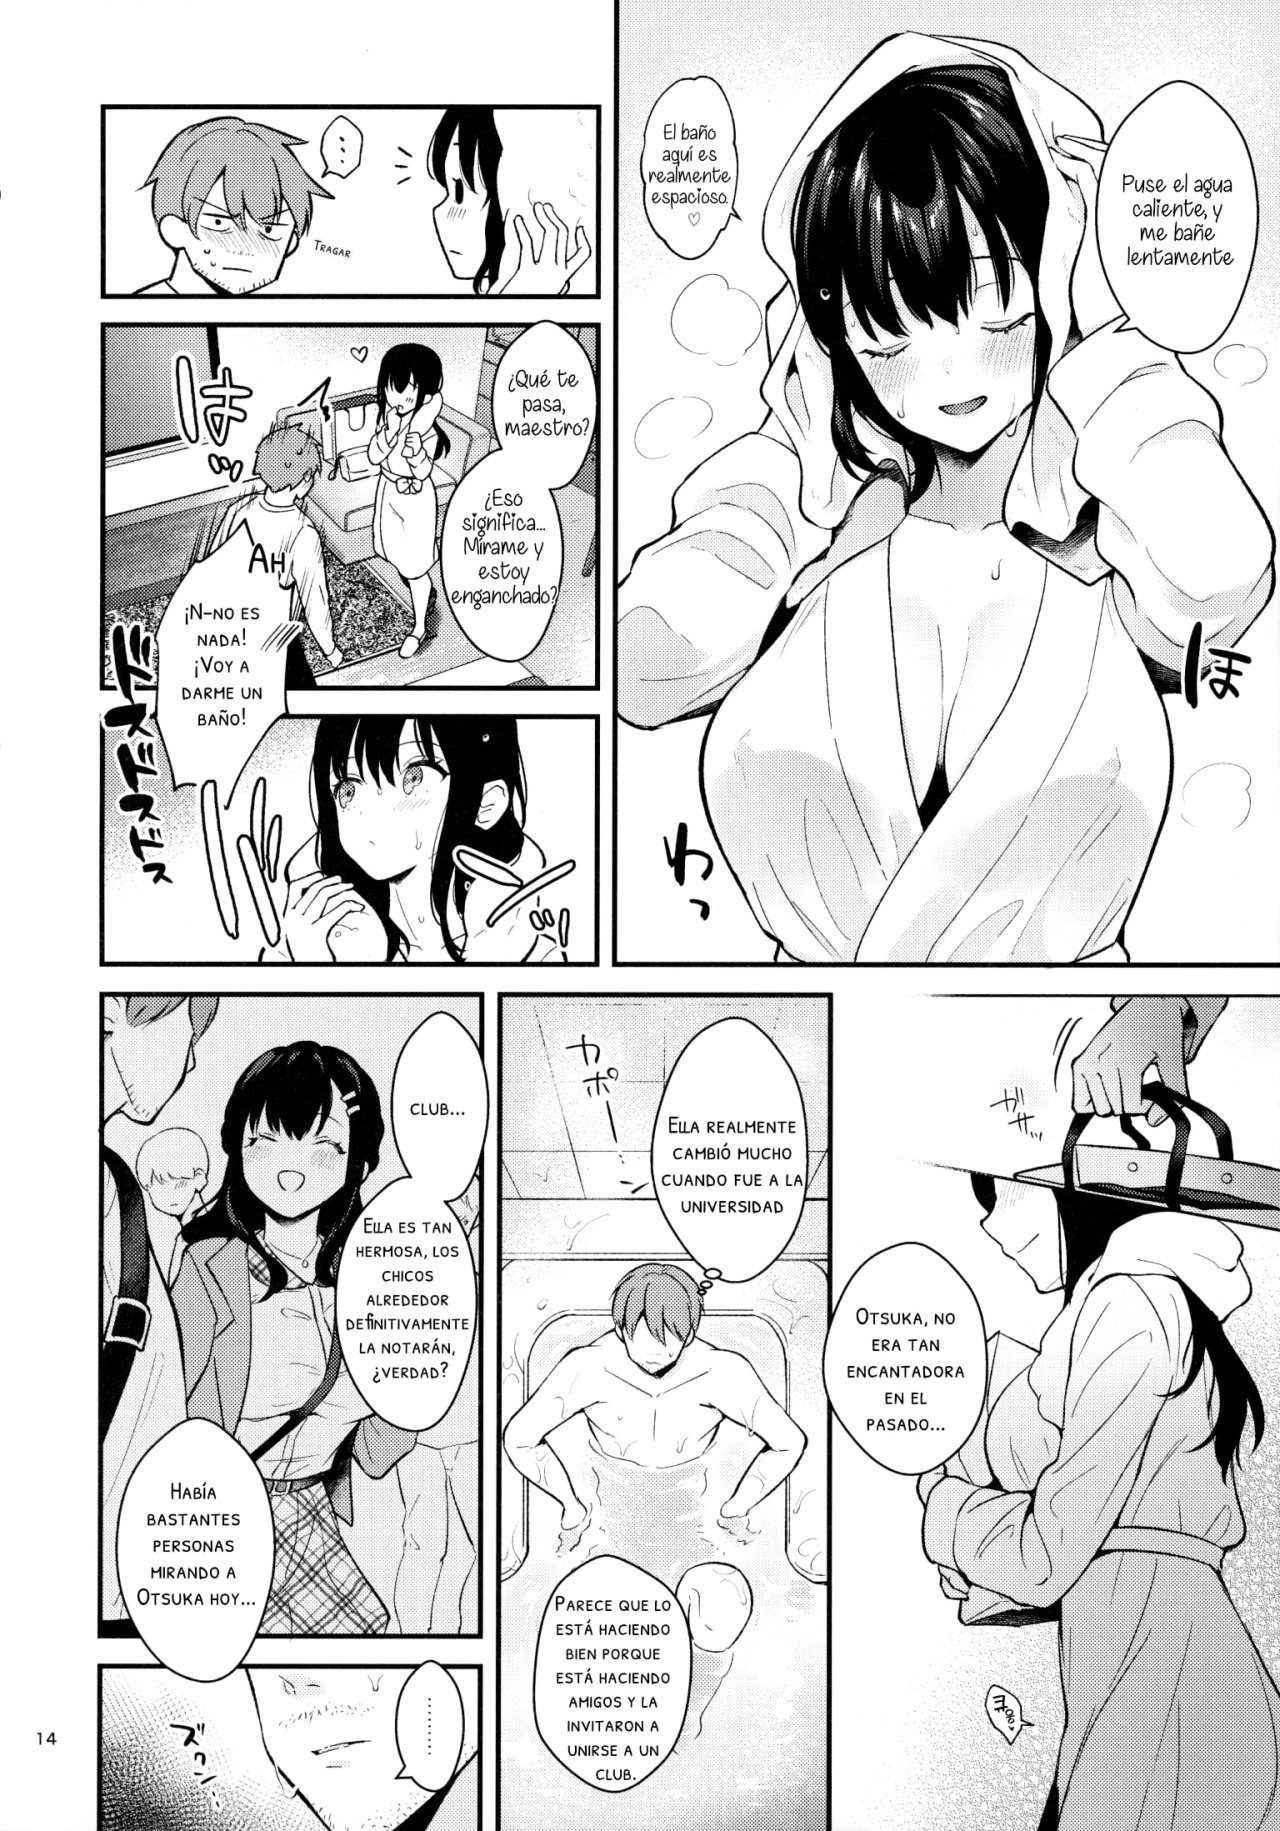 Sunshower-JK Miyako no Valentine Manga 3 - 12